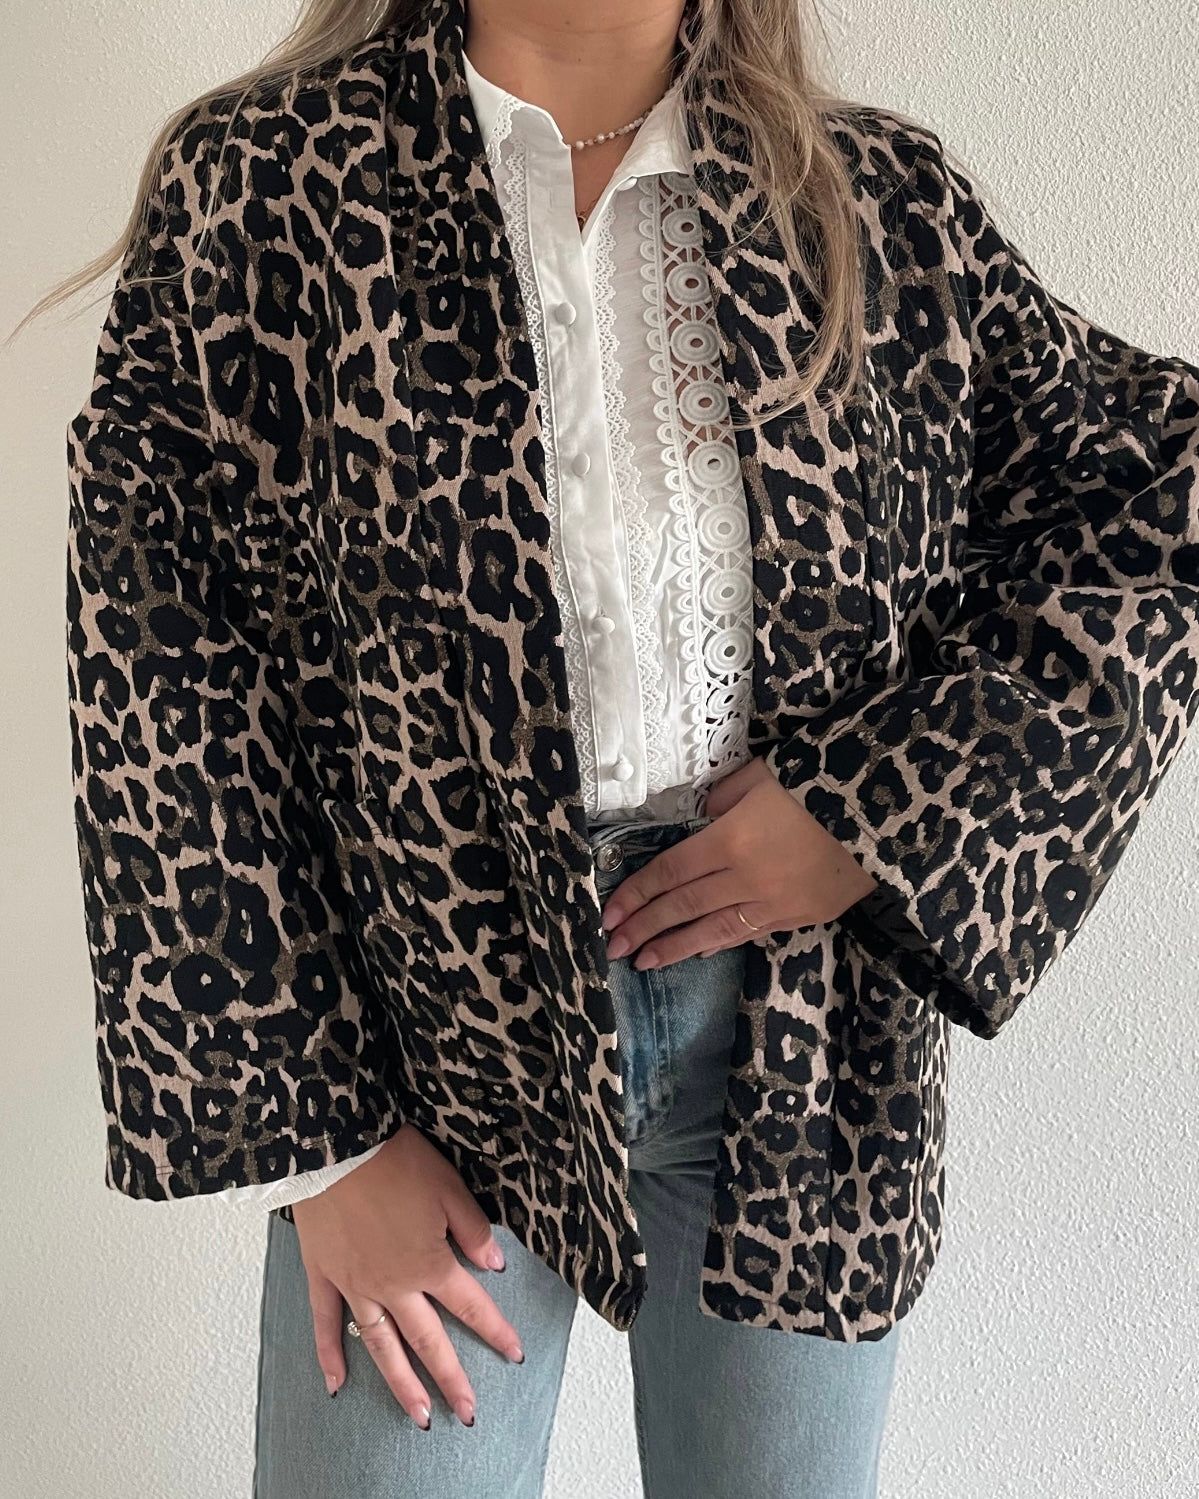 “Leopard love” jacket